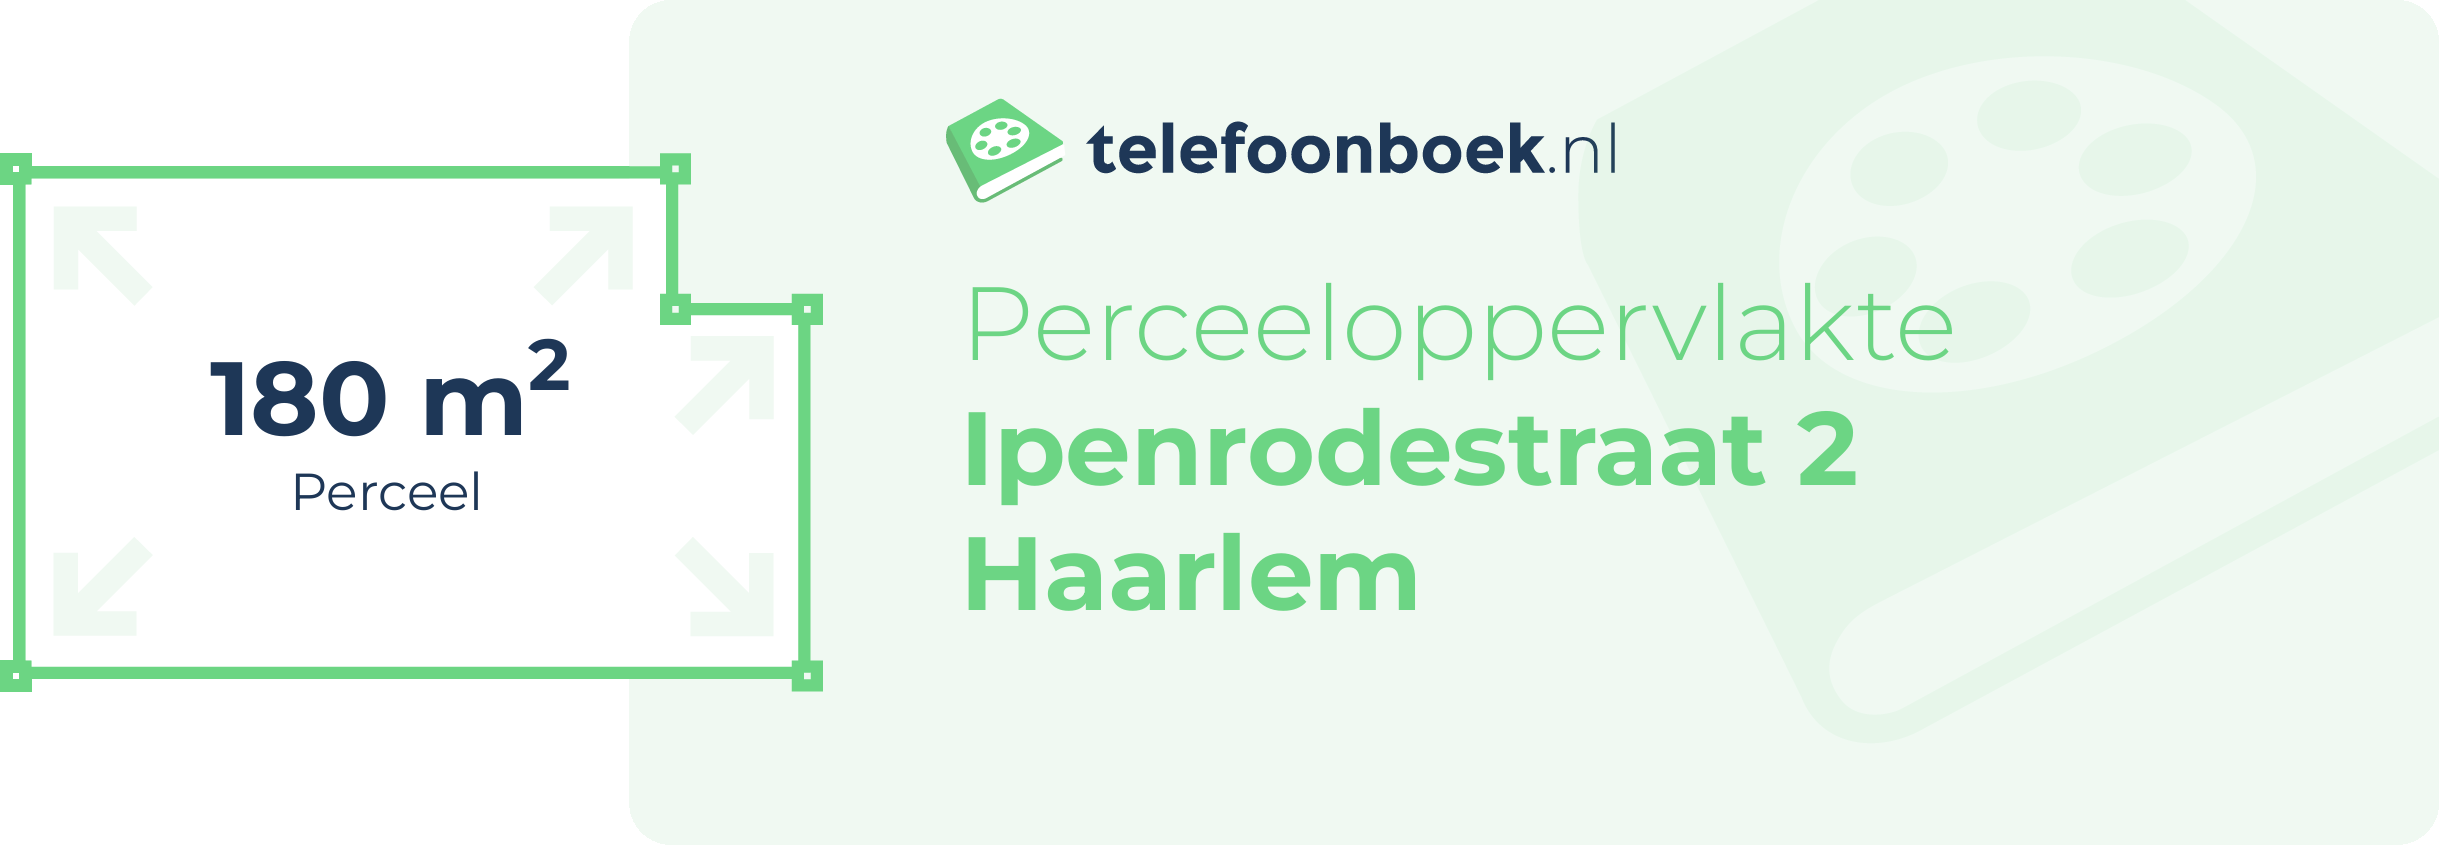 Perceeloppervlakte Ipenrodestraat 2 Haarlem